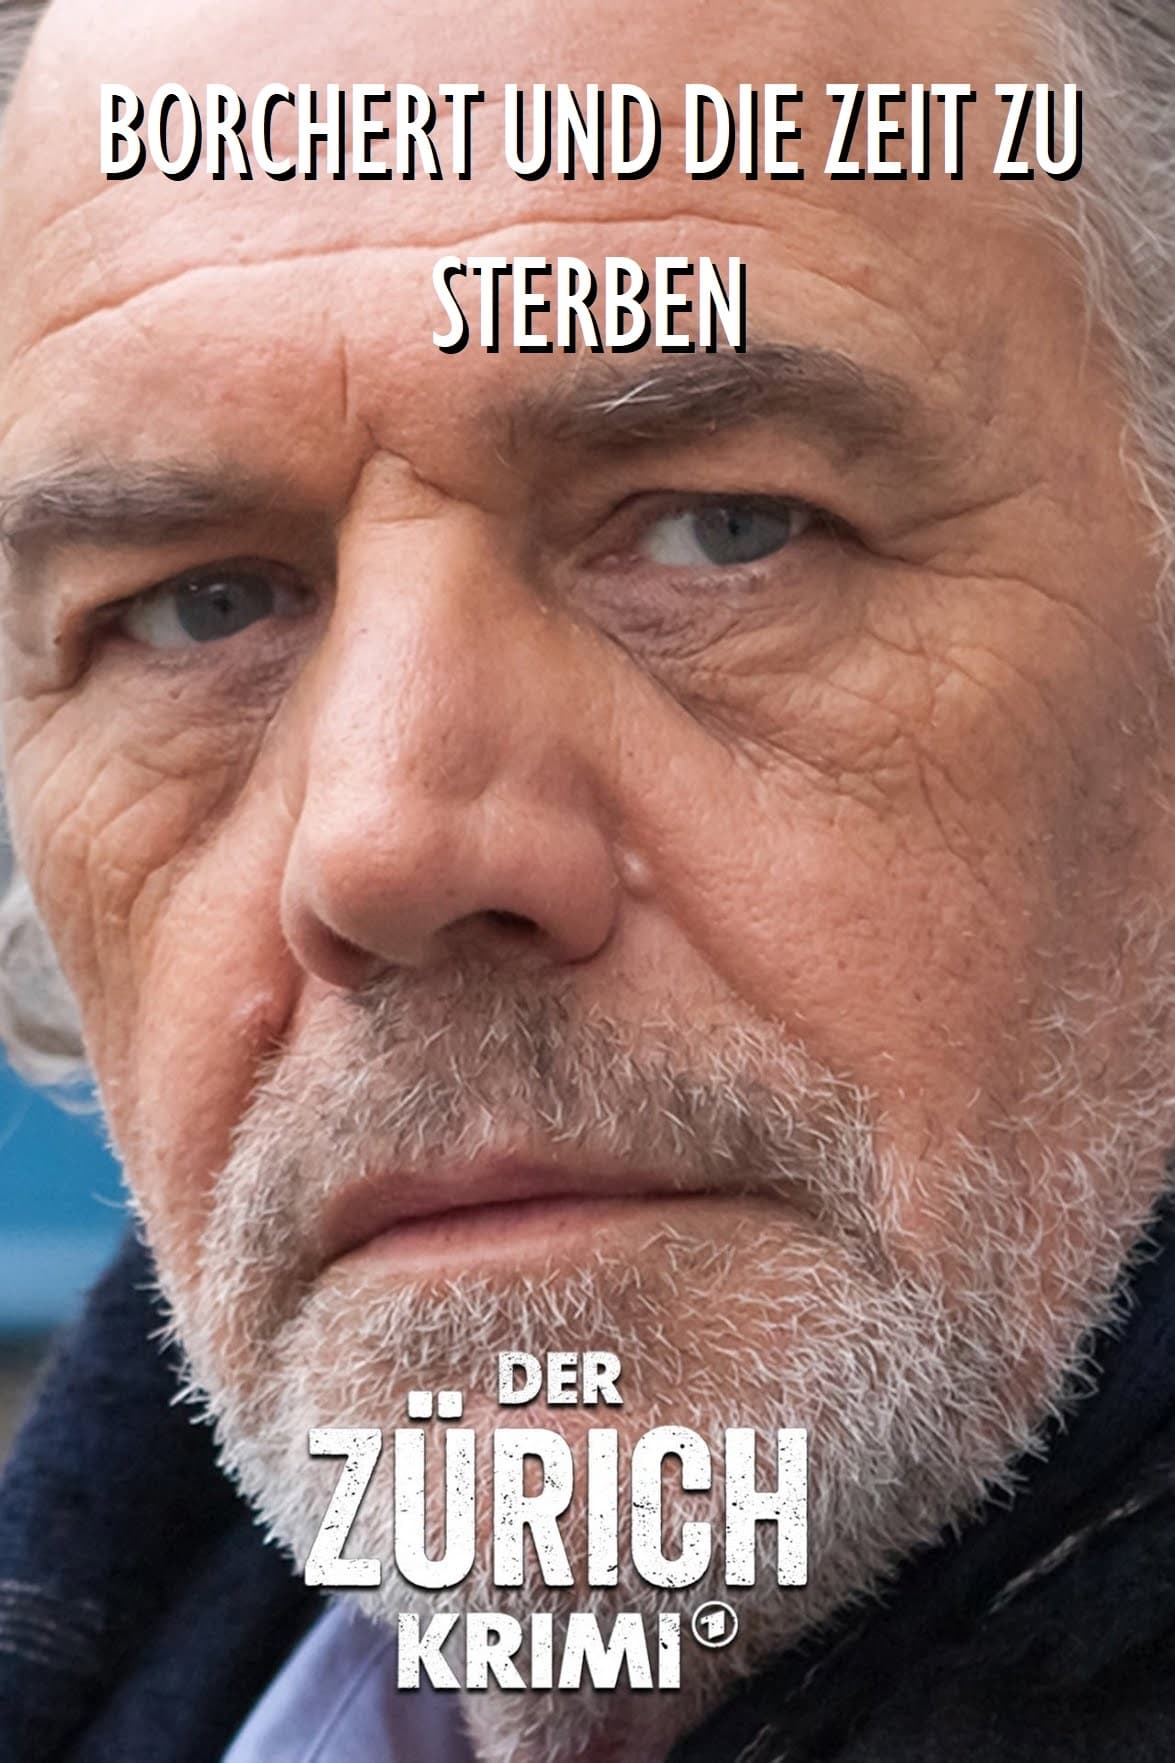 Money. Murder. Zurich.: Borchert and the time to die (2021)